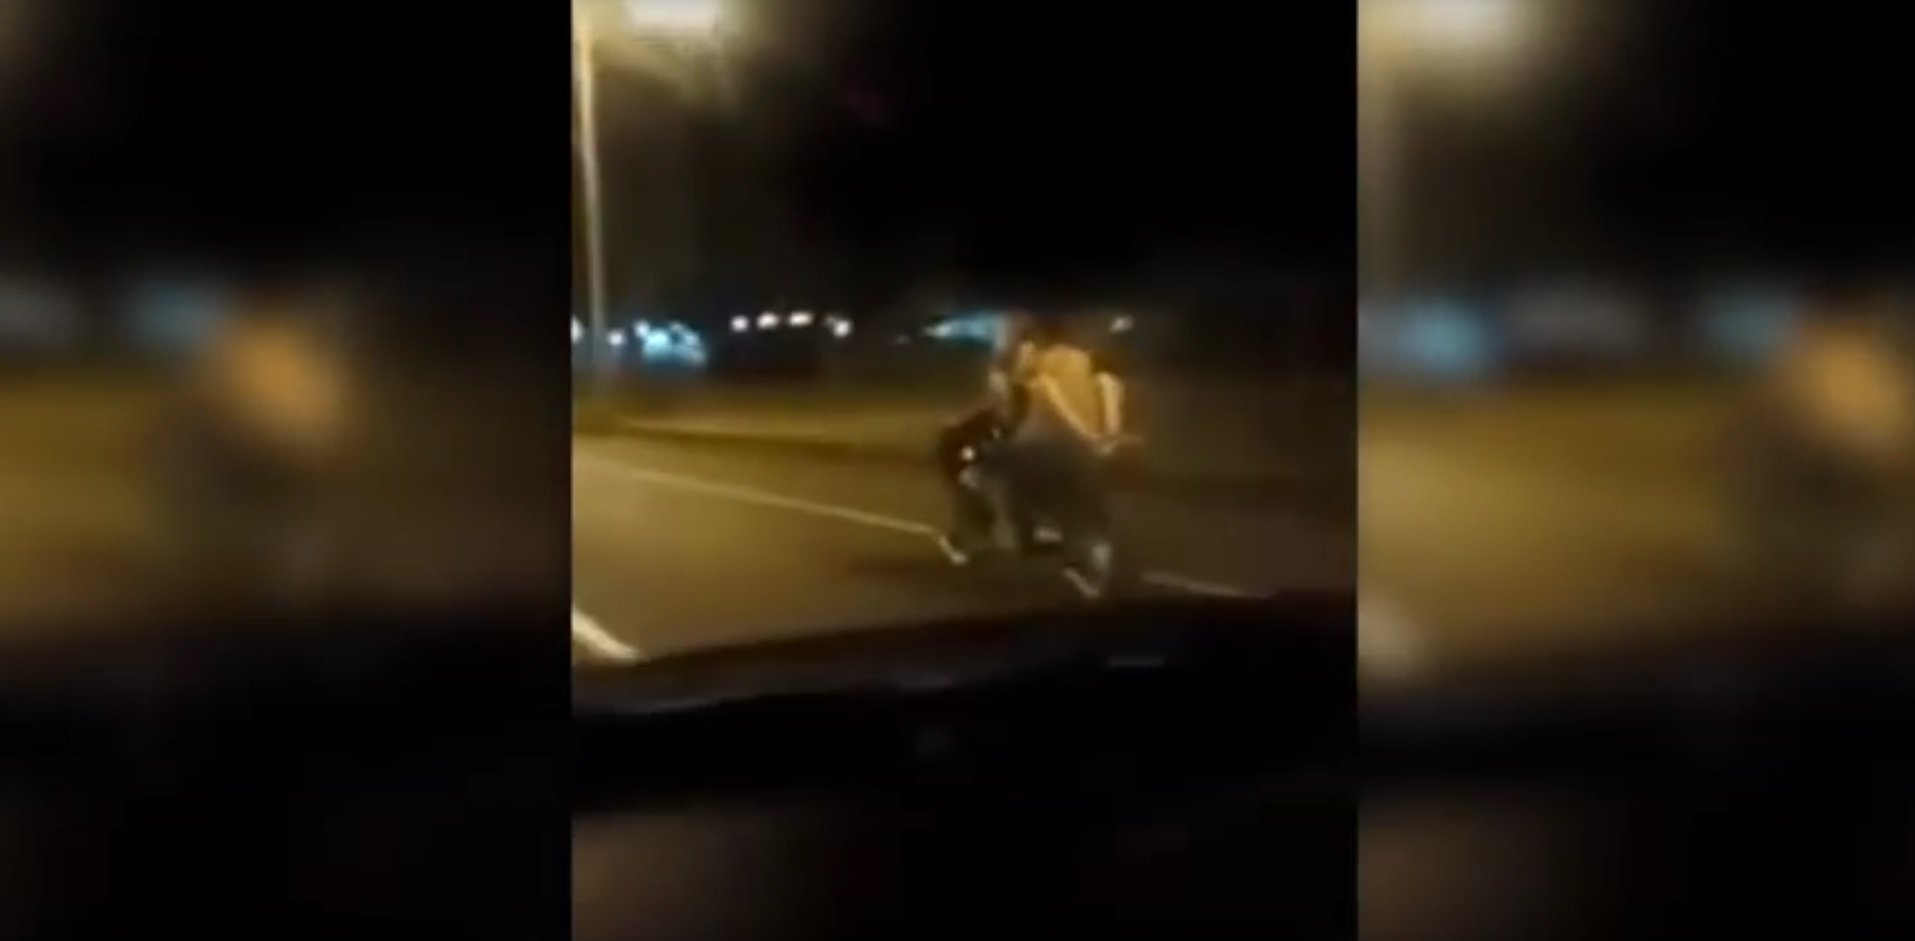 Pasión sobre ruedas: pillan una pareja haciendo el amor sobre una moto en marcha